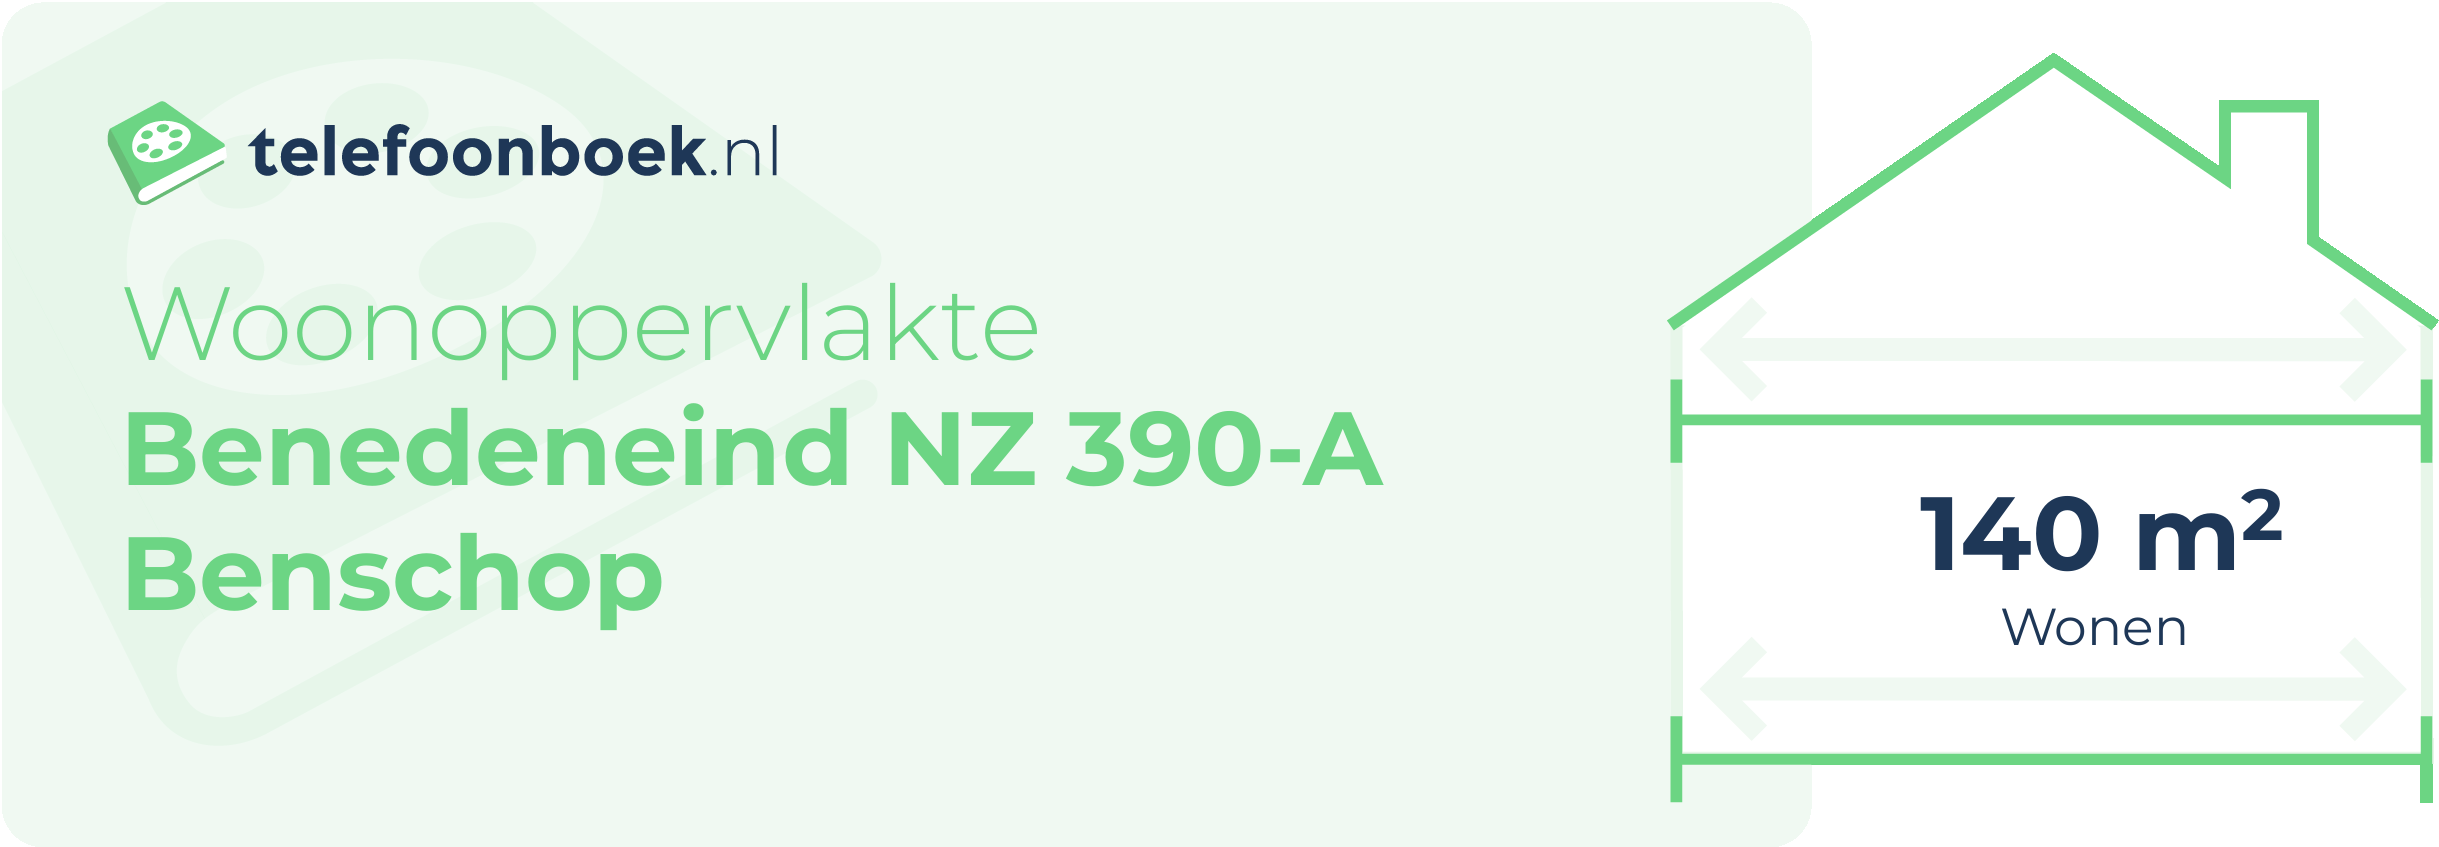 Woonoppervlakte Benedeneind NZ 390-A Benschop